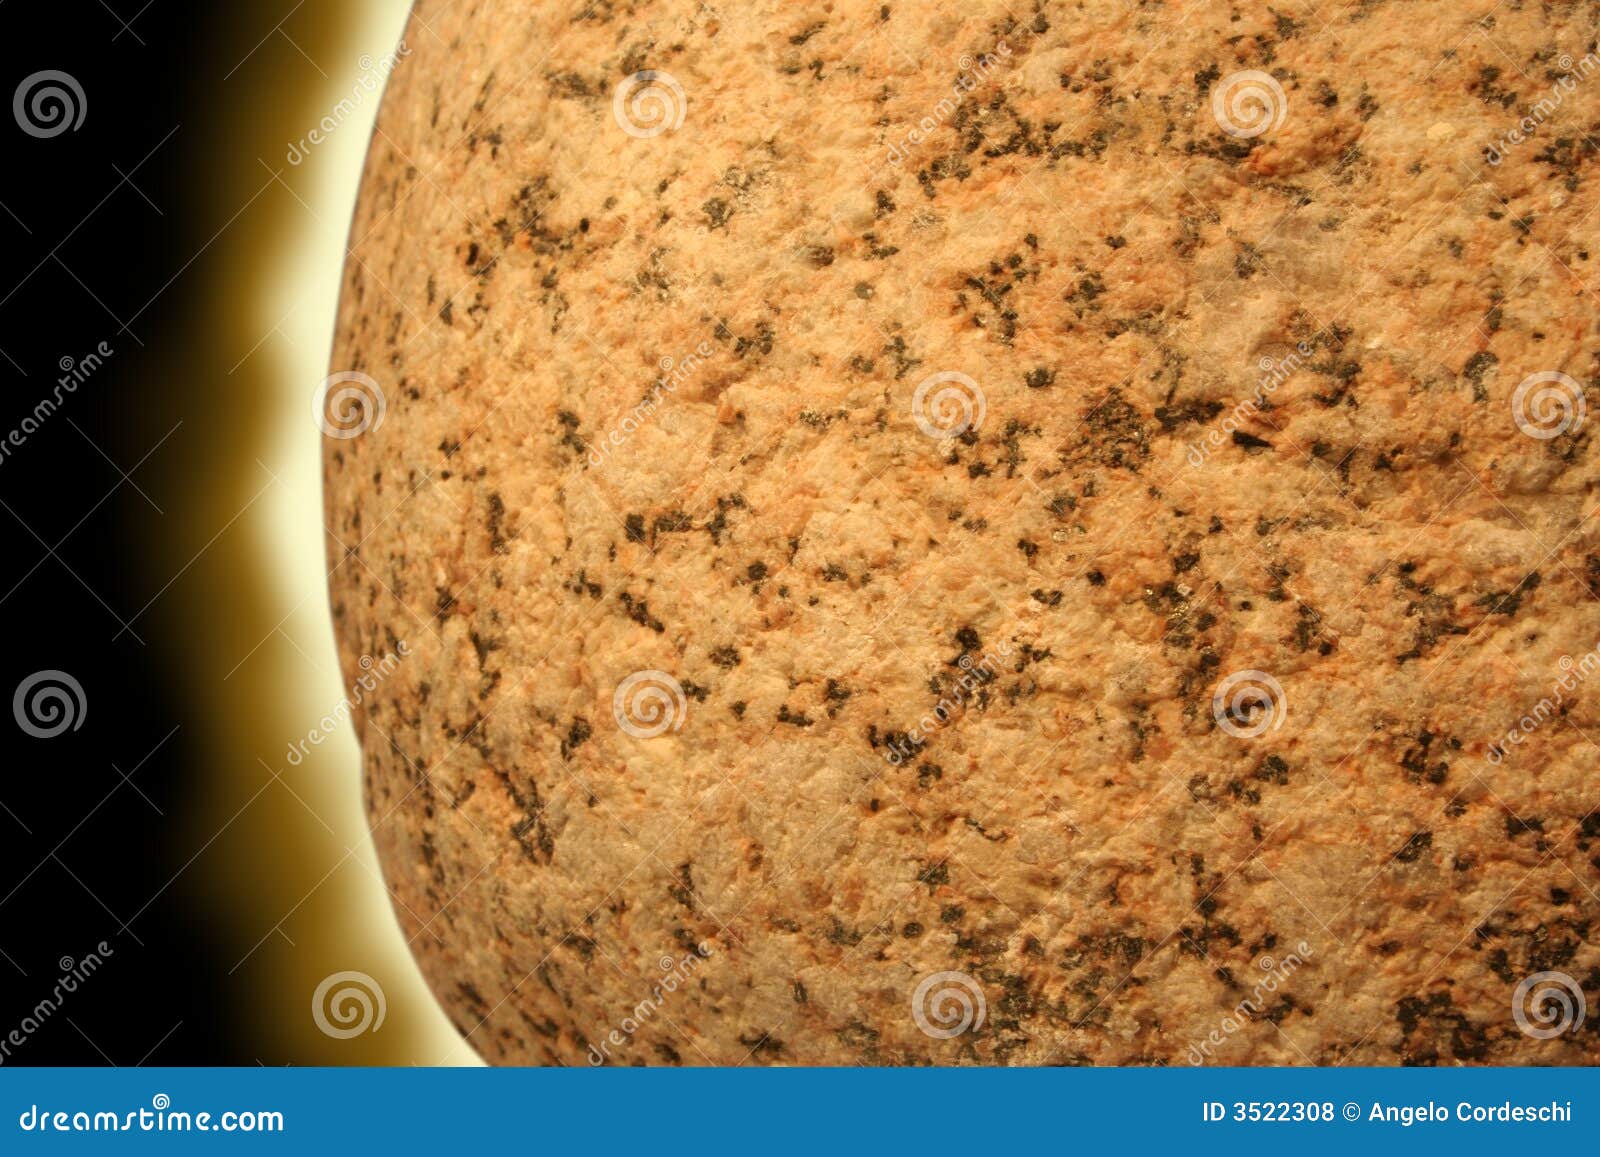  - granite-rock-sun-planet-3522308